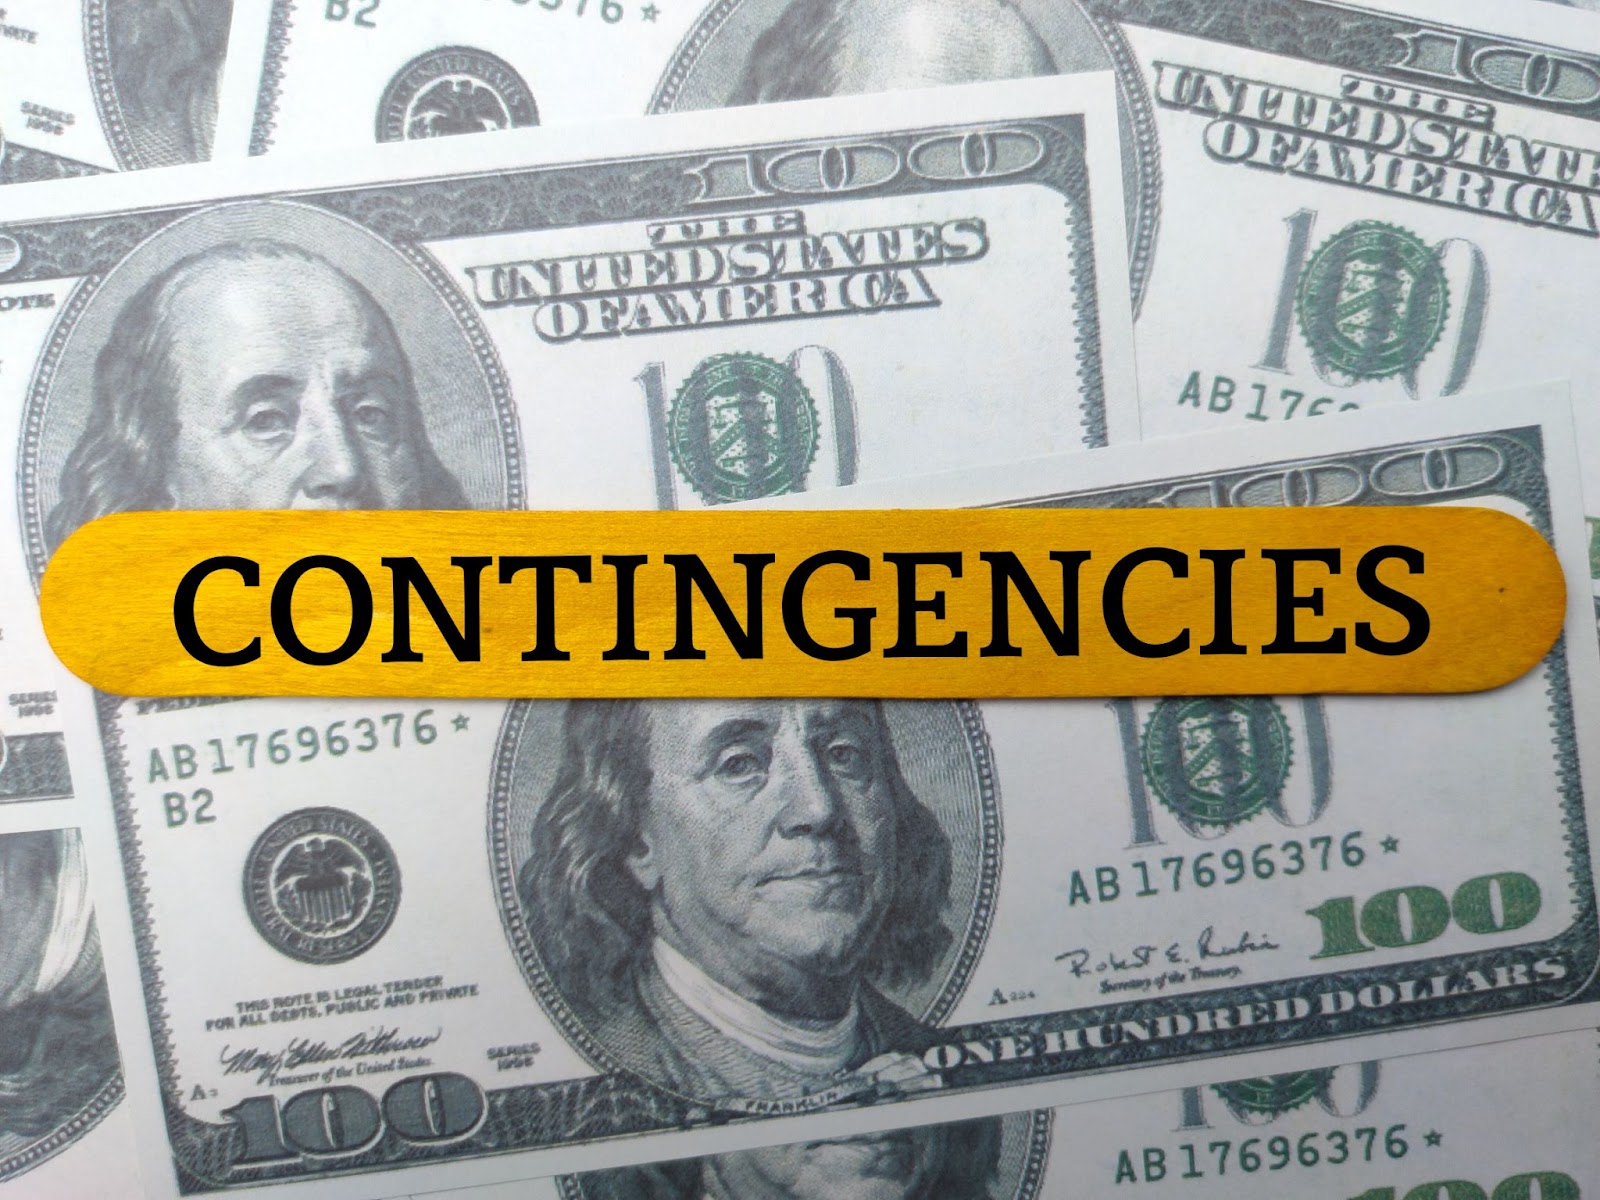 Contingencies can cancel a real estate contract